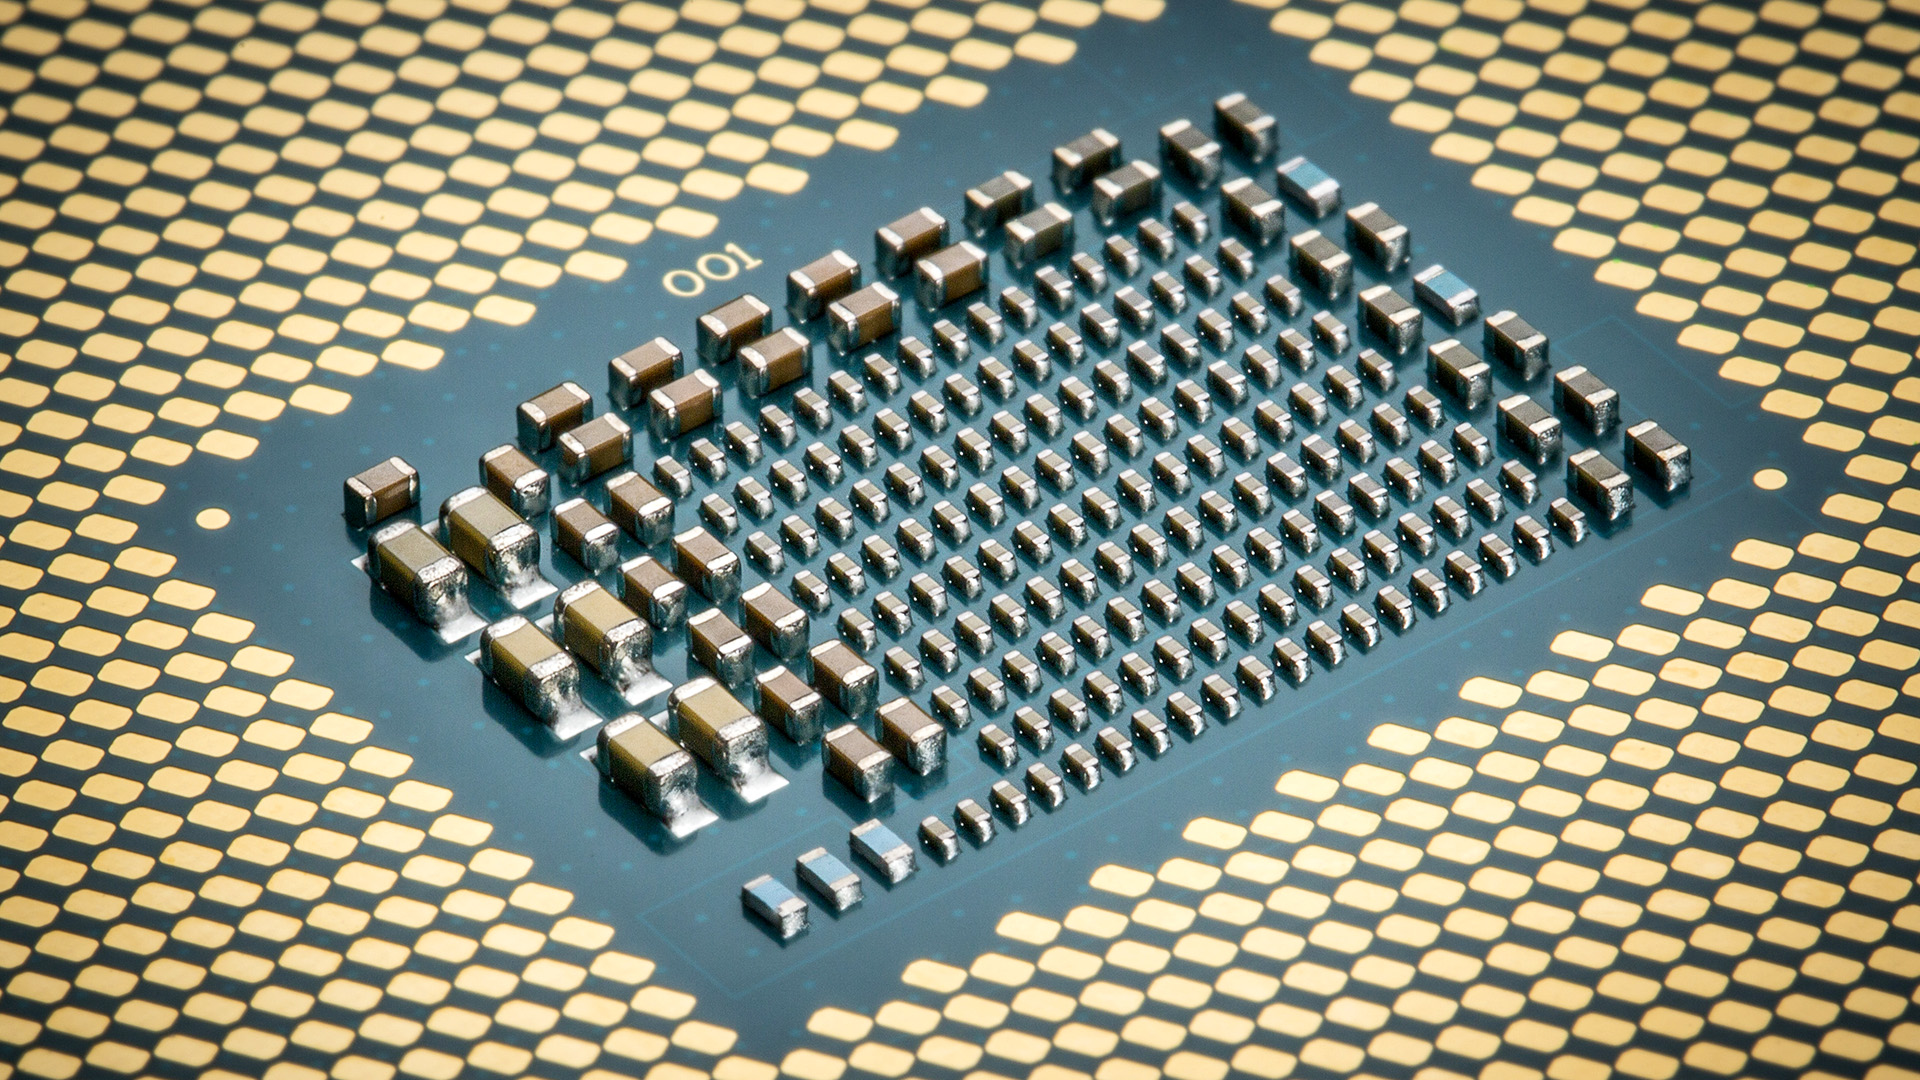 இன்டெல் ஆல்டர் லேக் ஃபிளாக்ஷிப் i9 12900K CPU $1000க்கு மேல் வெளிவருவதற்கு முன்னதாக பட்டியலிடப்பட்டுள்ளது